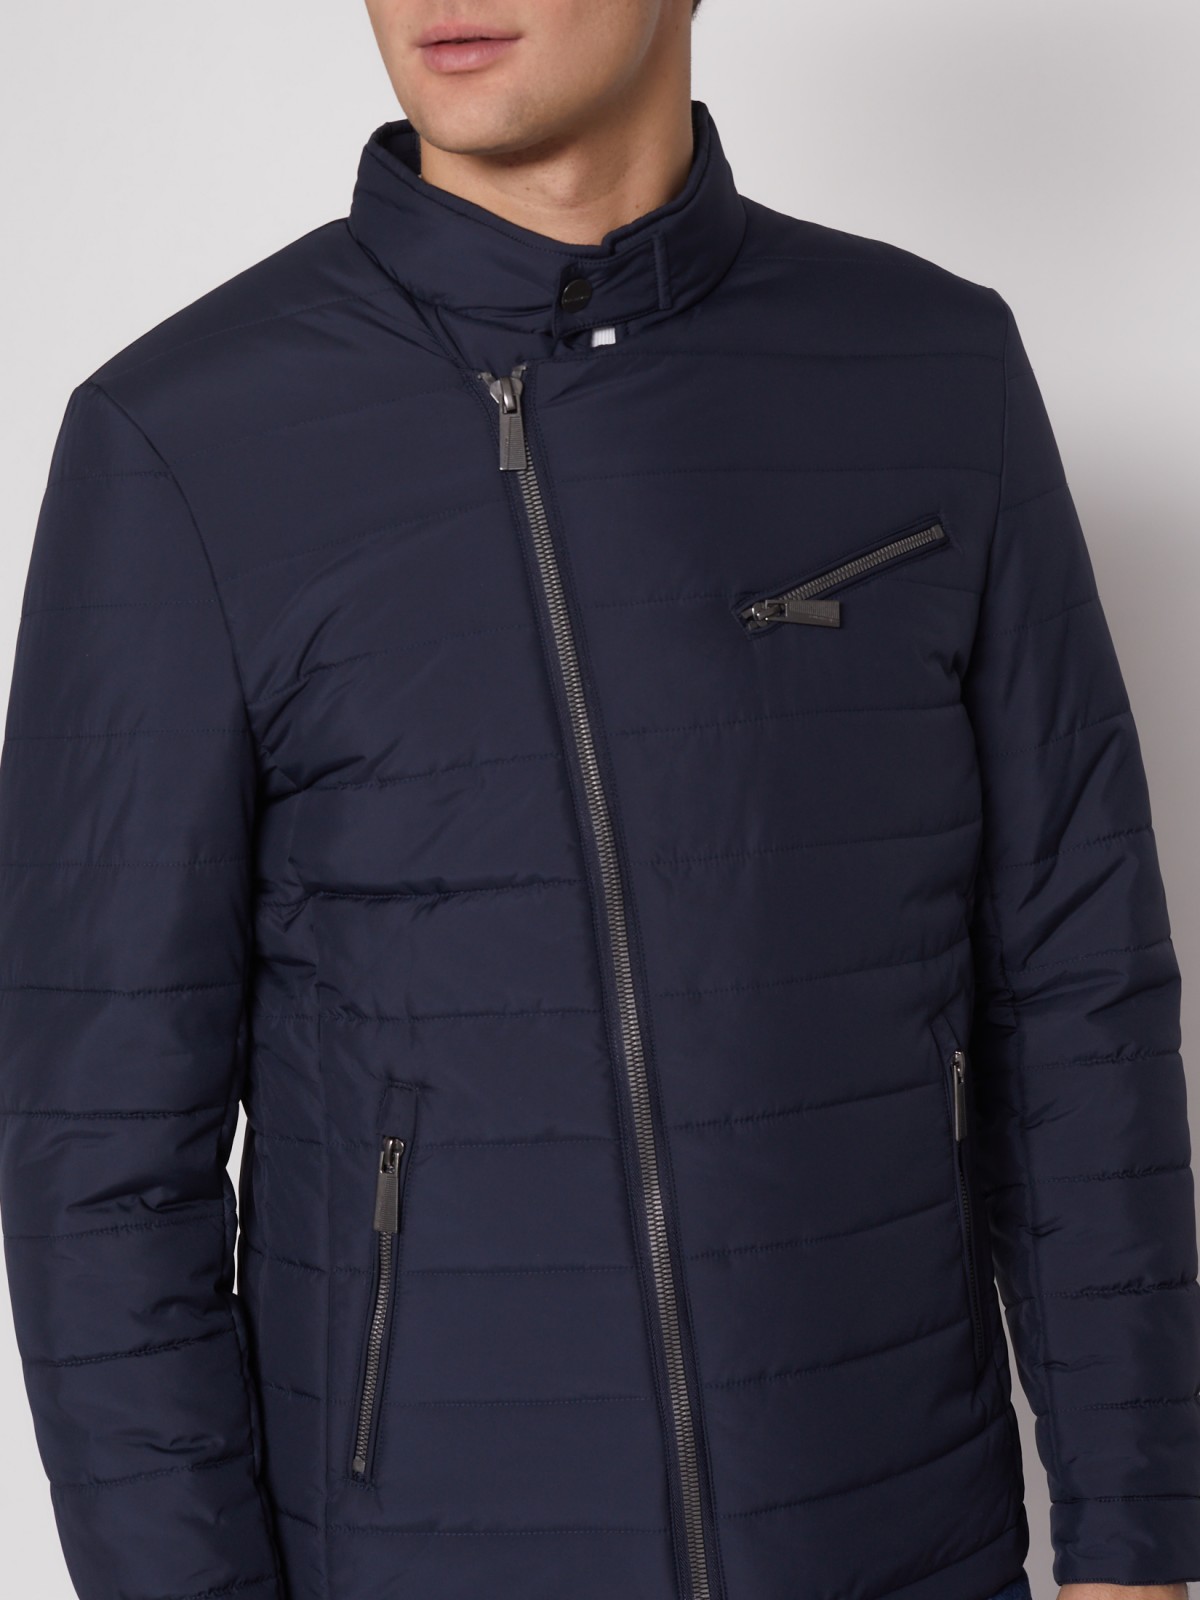 Куртка-косуха с воротником-стойкой zolla 012135139134, цвет синий, размер M - фото 5